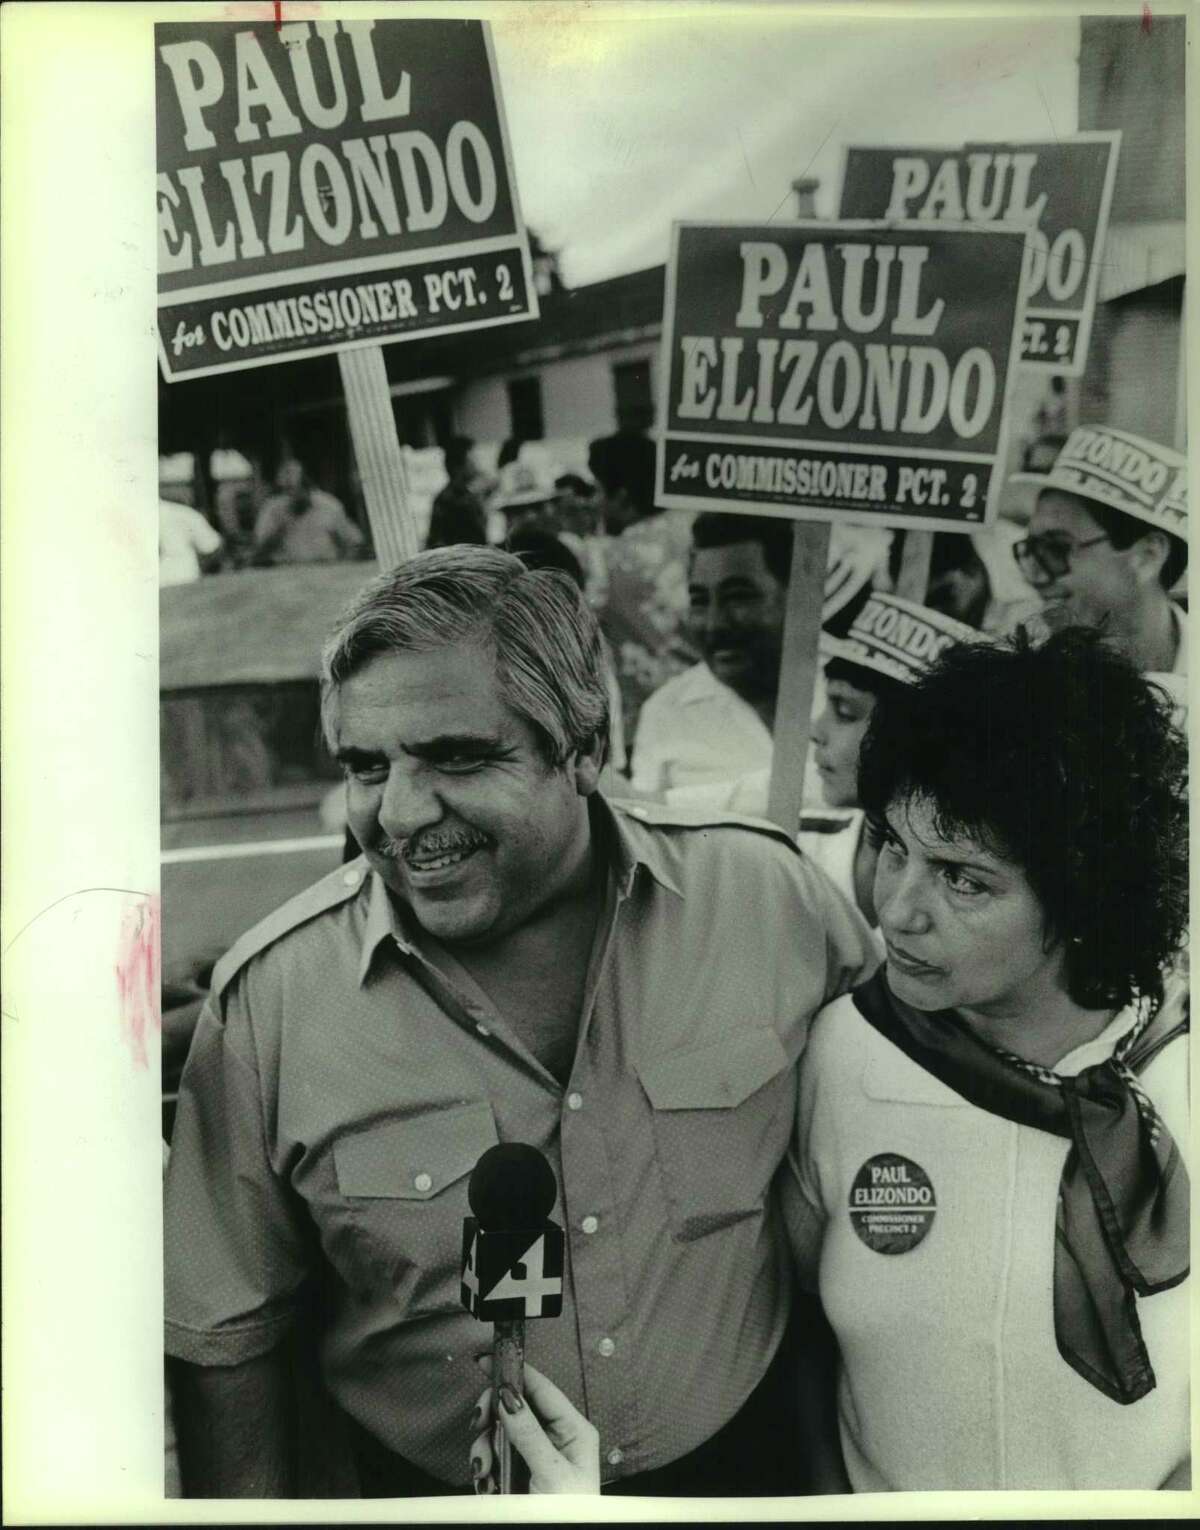 Paul Elizondo with his wife, Irene Elizondo